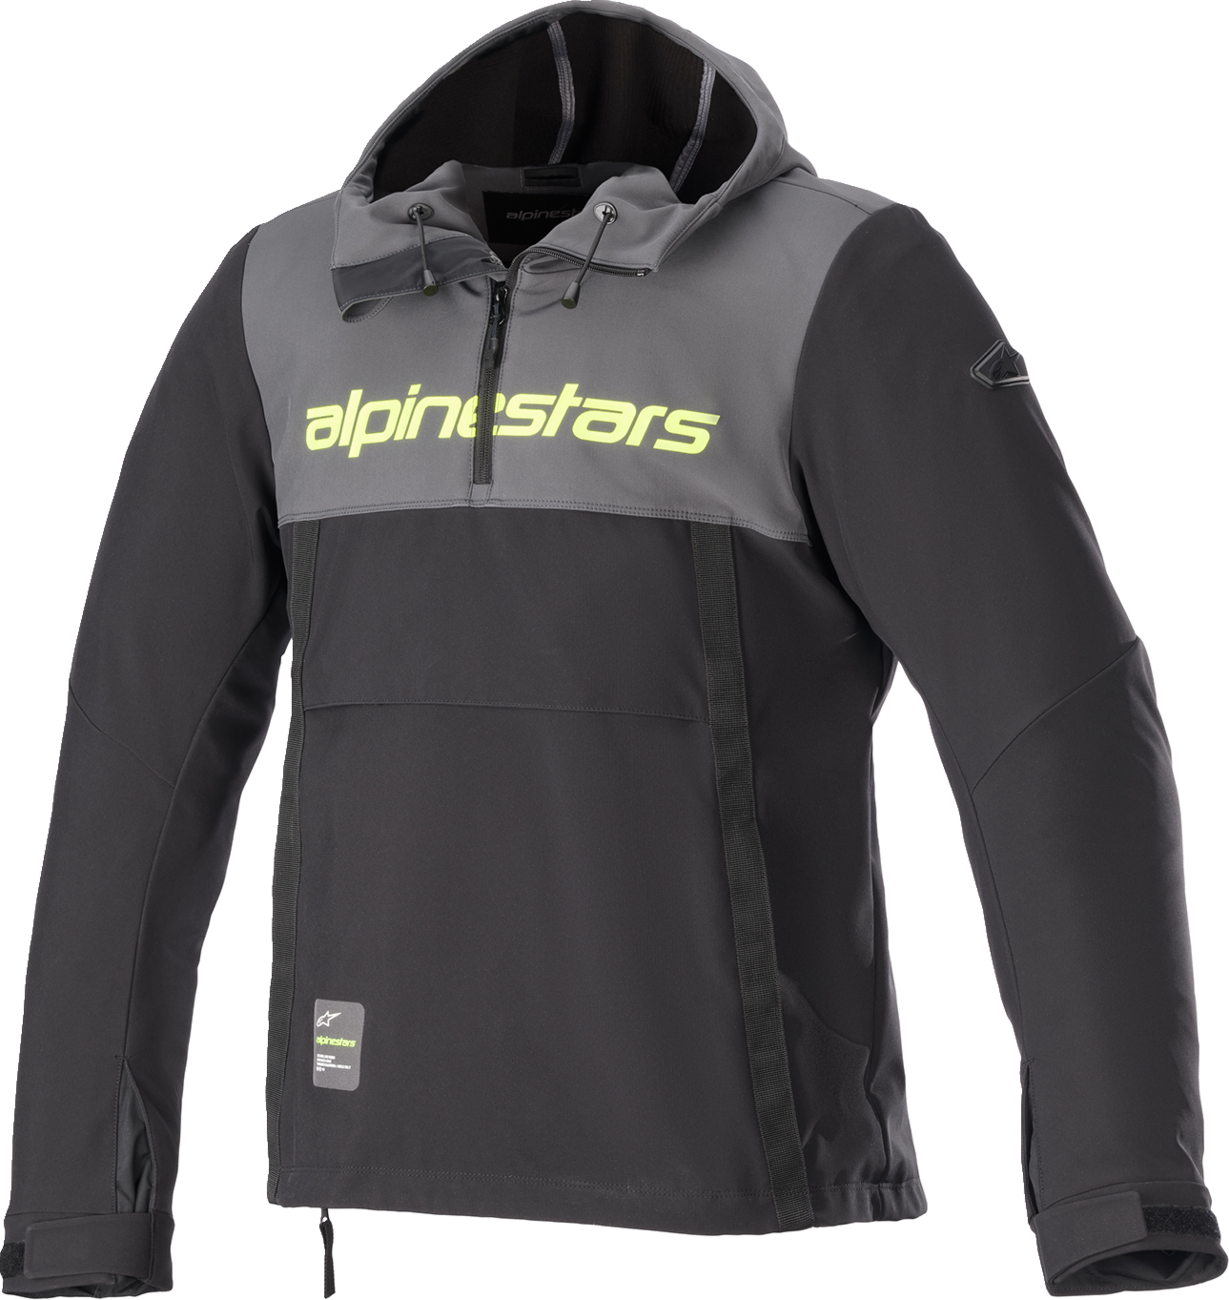 ALPINESTARS Sherpa Jacket - Black/Gray/Yellow - Large 4208123-9151-L